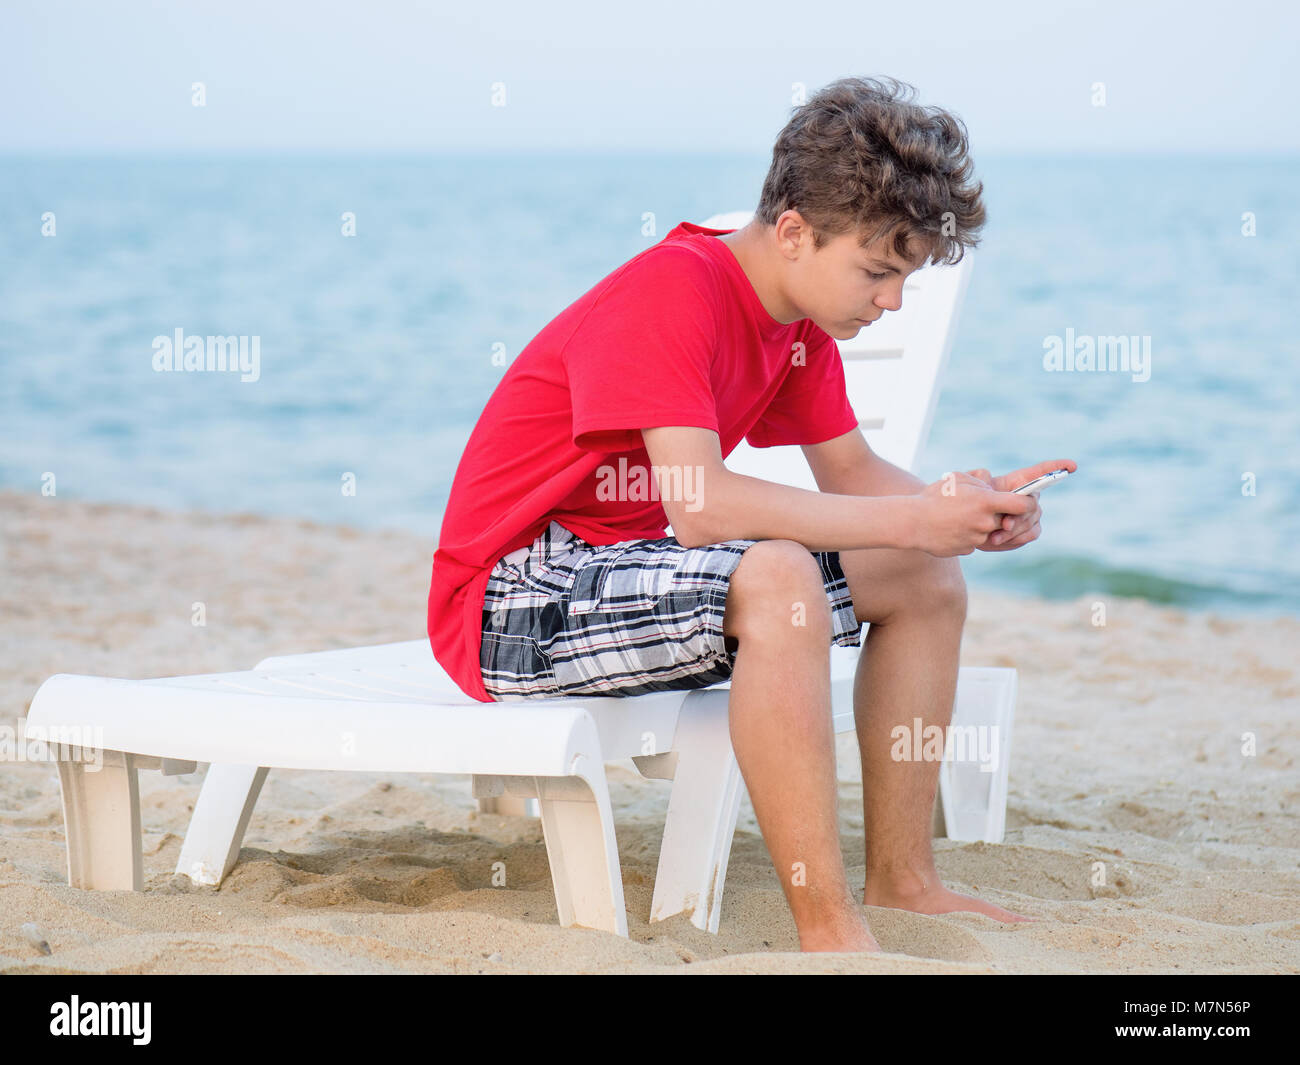 Teen boy on beach Banque D'Images